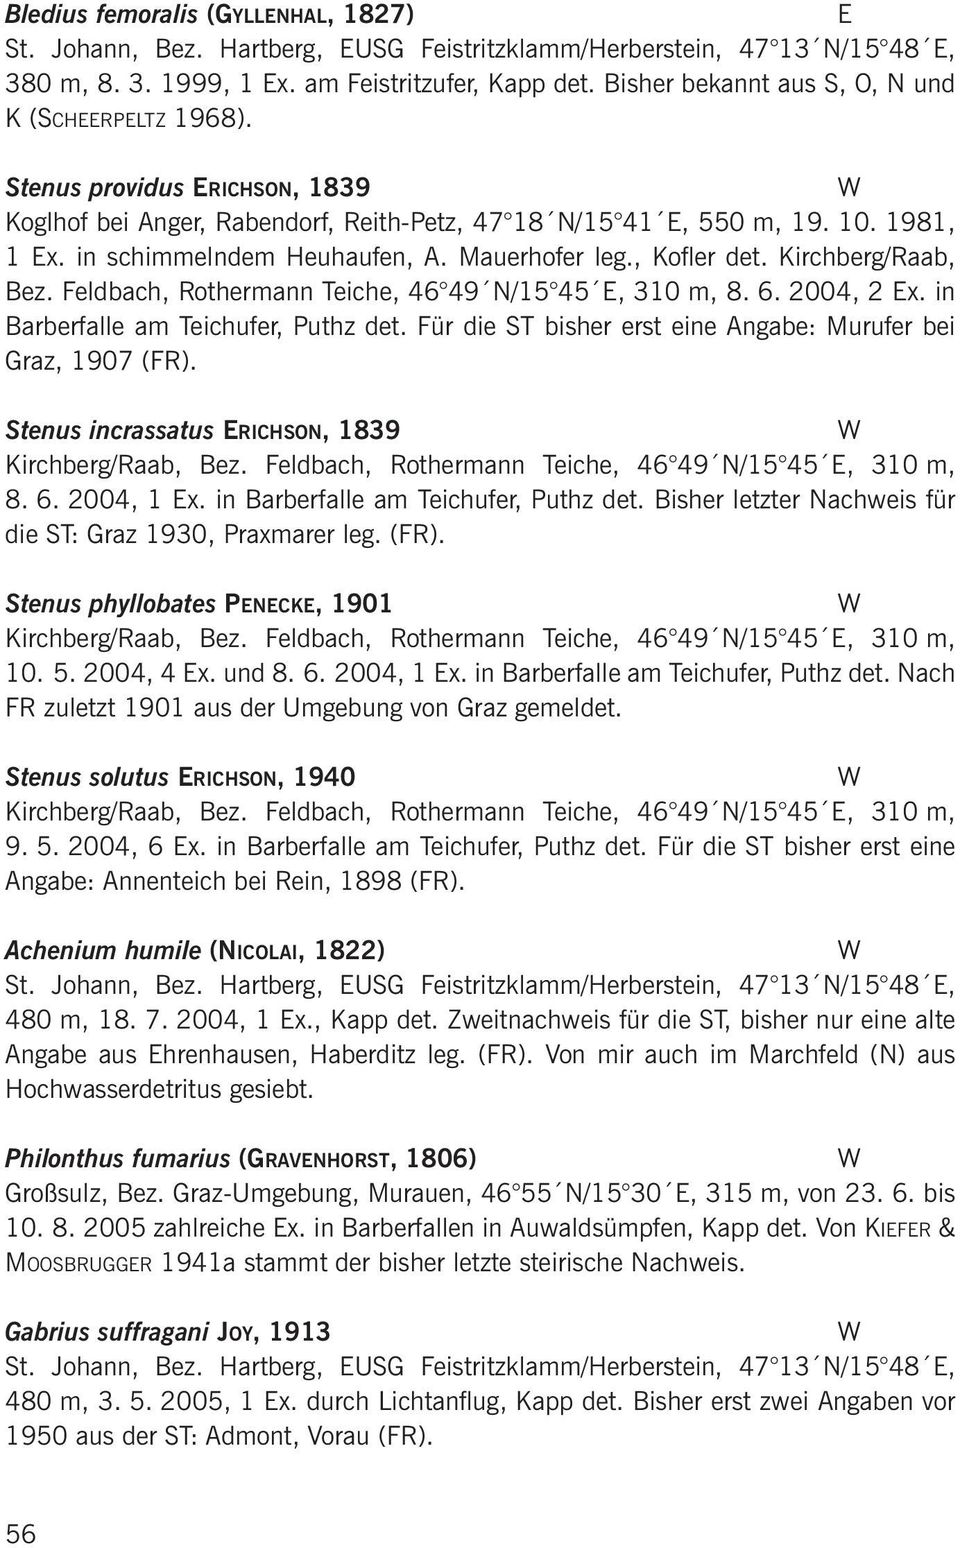 Mauerhofer leg., Kofler det. Kirchberg/Raab, Bez. Feldbach, Rothermann Teiche, 46 49 N/15 45, 310 m, 8. 6. 2004, 2 x. in Barberfalle am Teichufer, Puthz det.